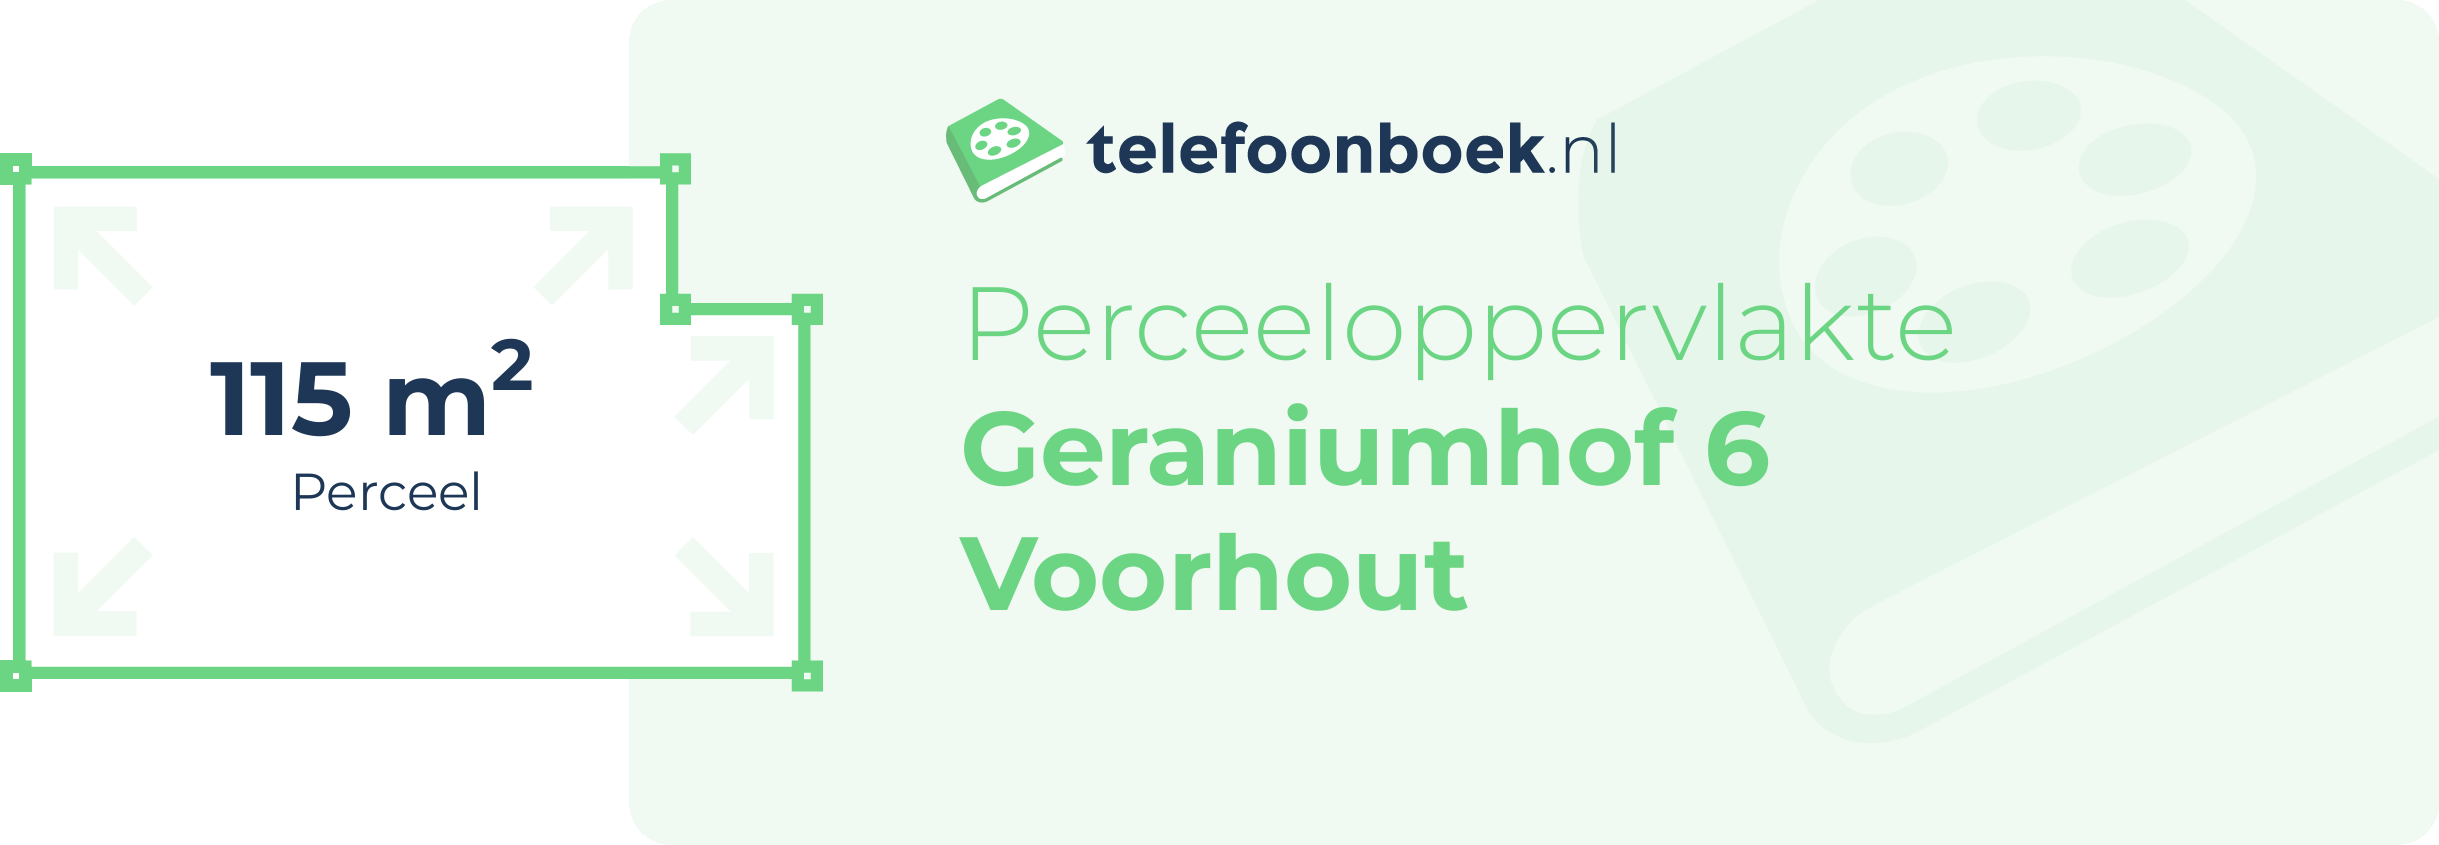 Perceeloppervlakte Geraniumhof 6 Voorhout